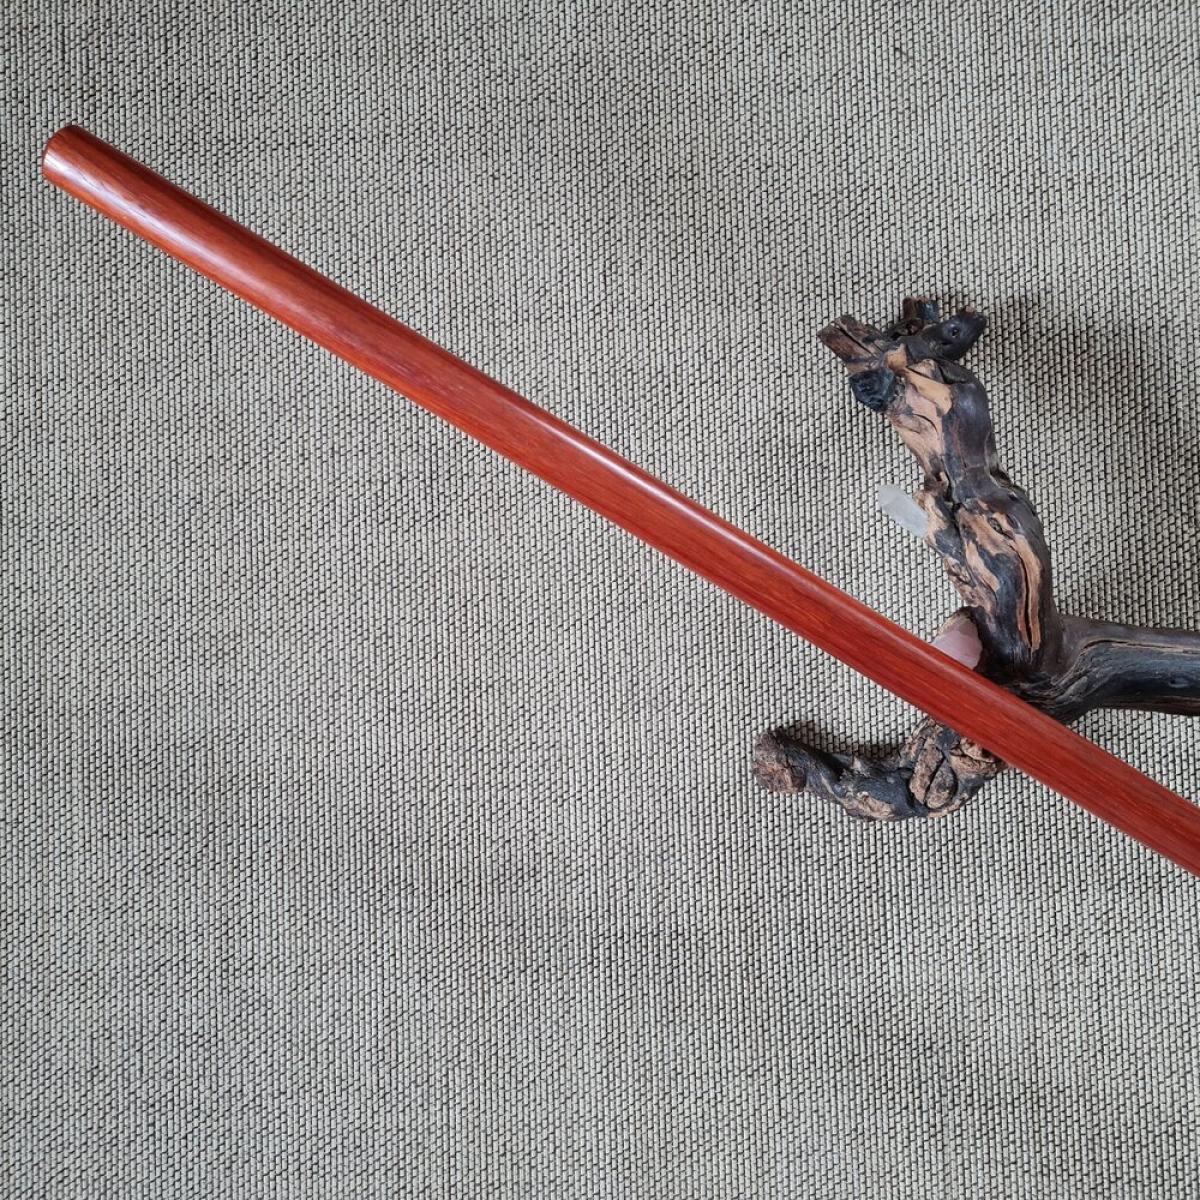 Jo stick made of  balayong - length 128 cm ➤ www.bokken-shop.de. Suitable for Aikido, Iaido, Jo-Jutsu, Jodo, Bujinkan. Your Budo dealer!